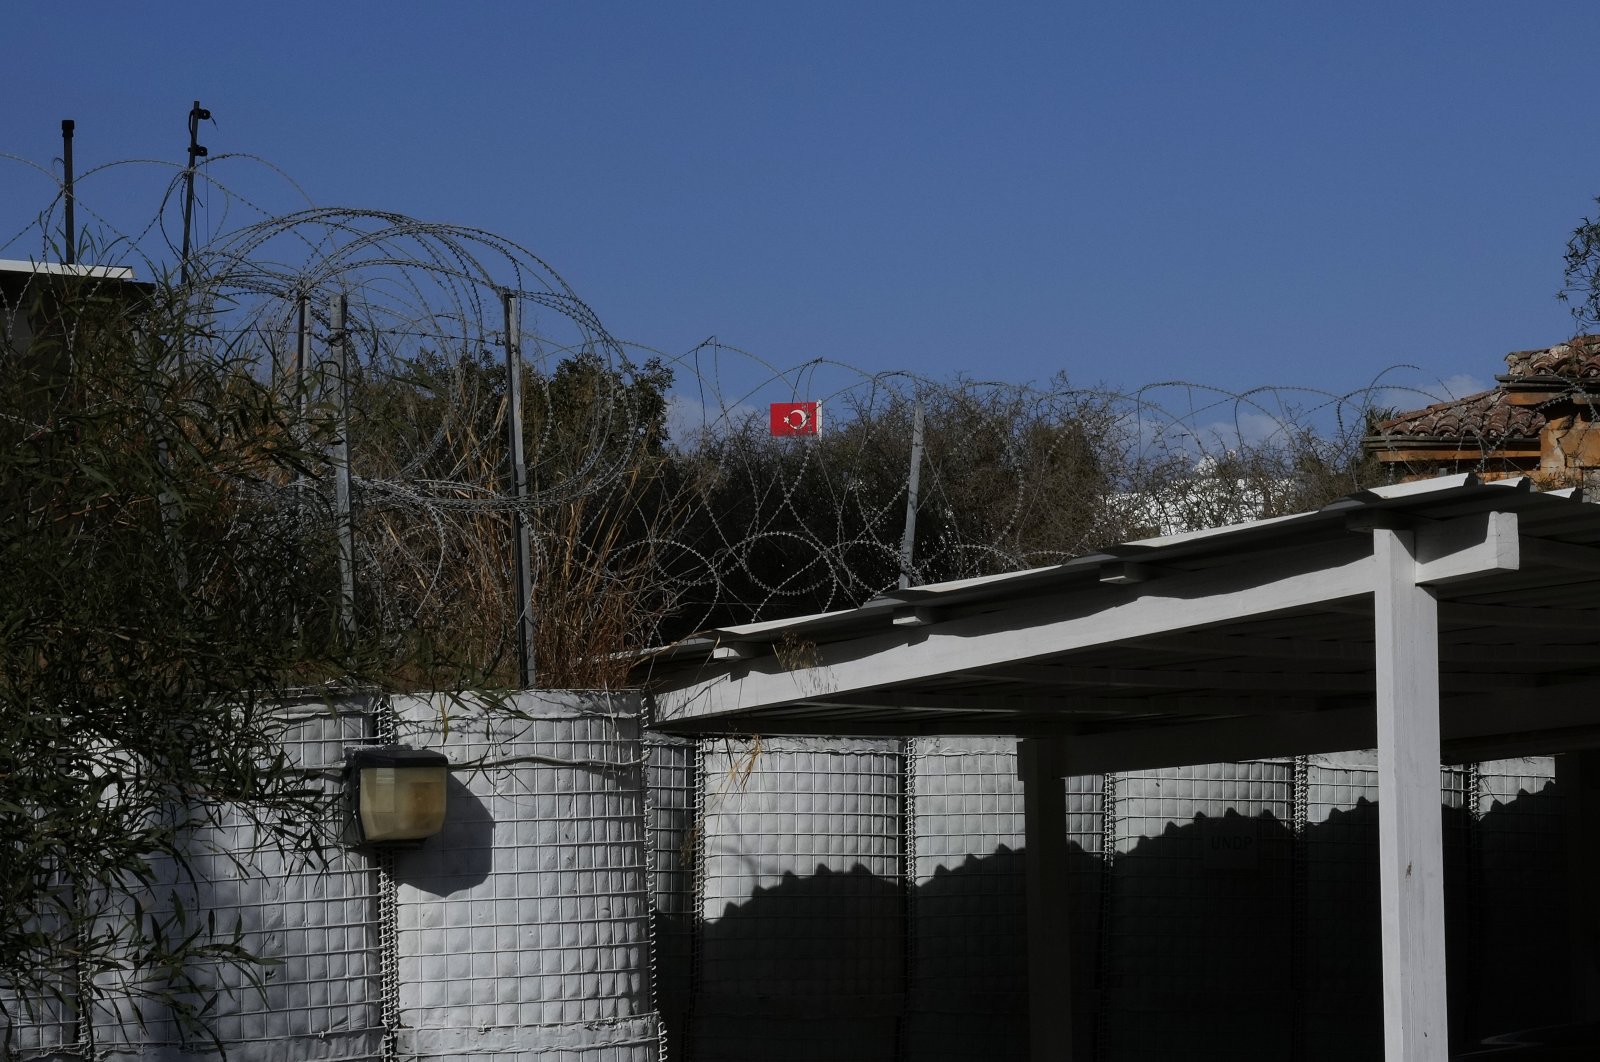 Rencana East Med tidak termasuk pihak Turki akan gagal: FM Siprus Turki